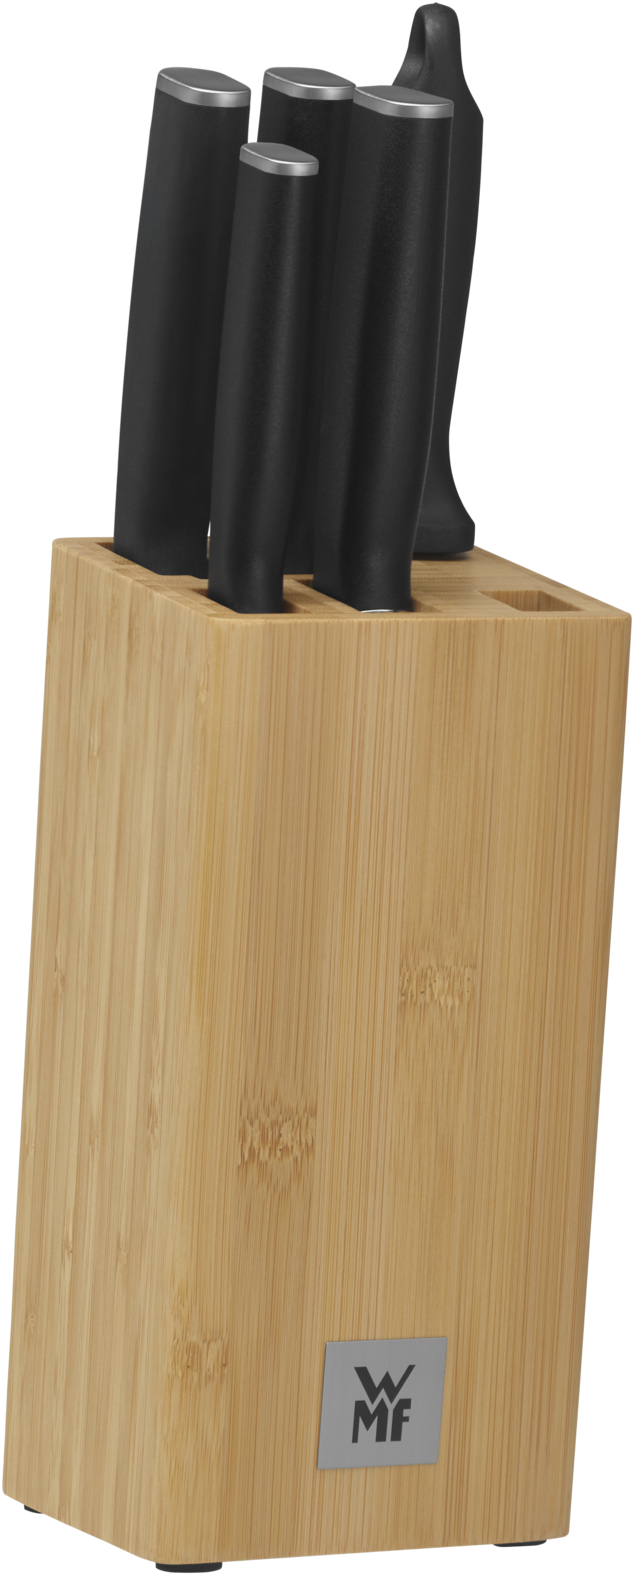 Набор ножей KIneo 6 предметов с блоком набор профессиональных отверток и бит deko ss100 с удобной подставкой черно желтый